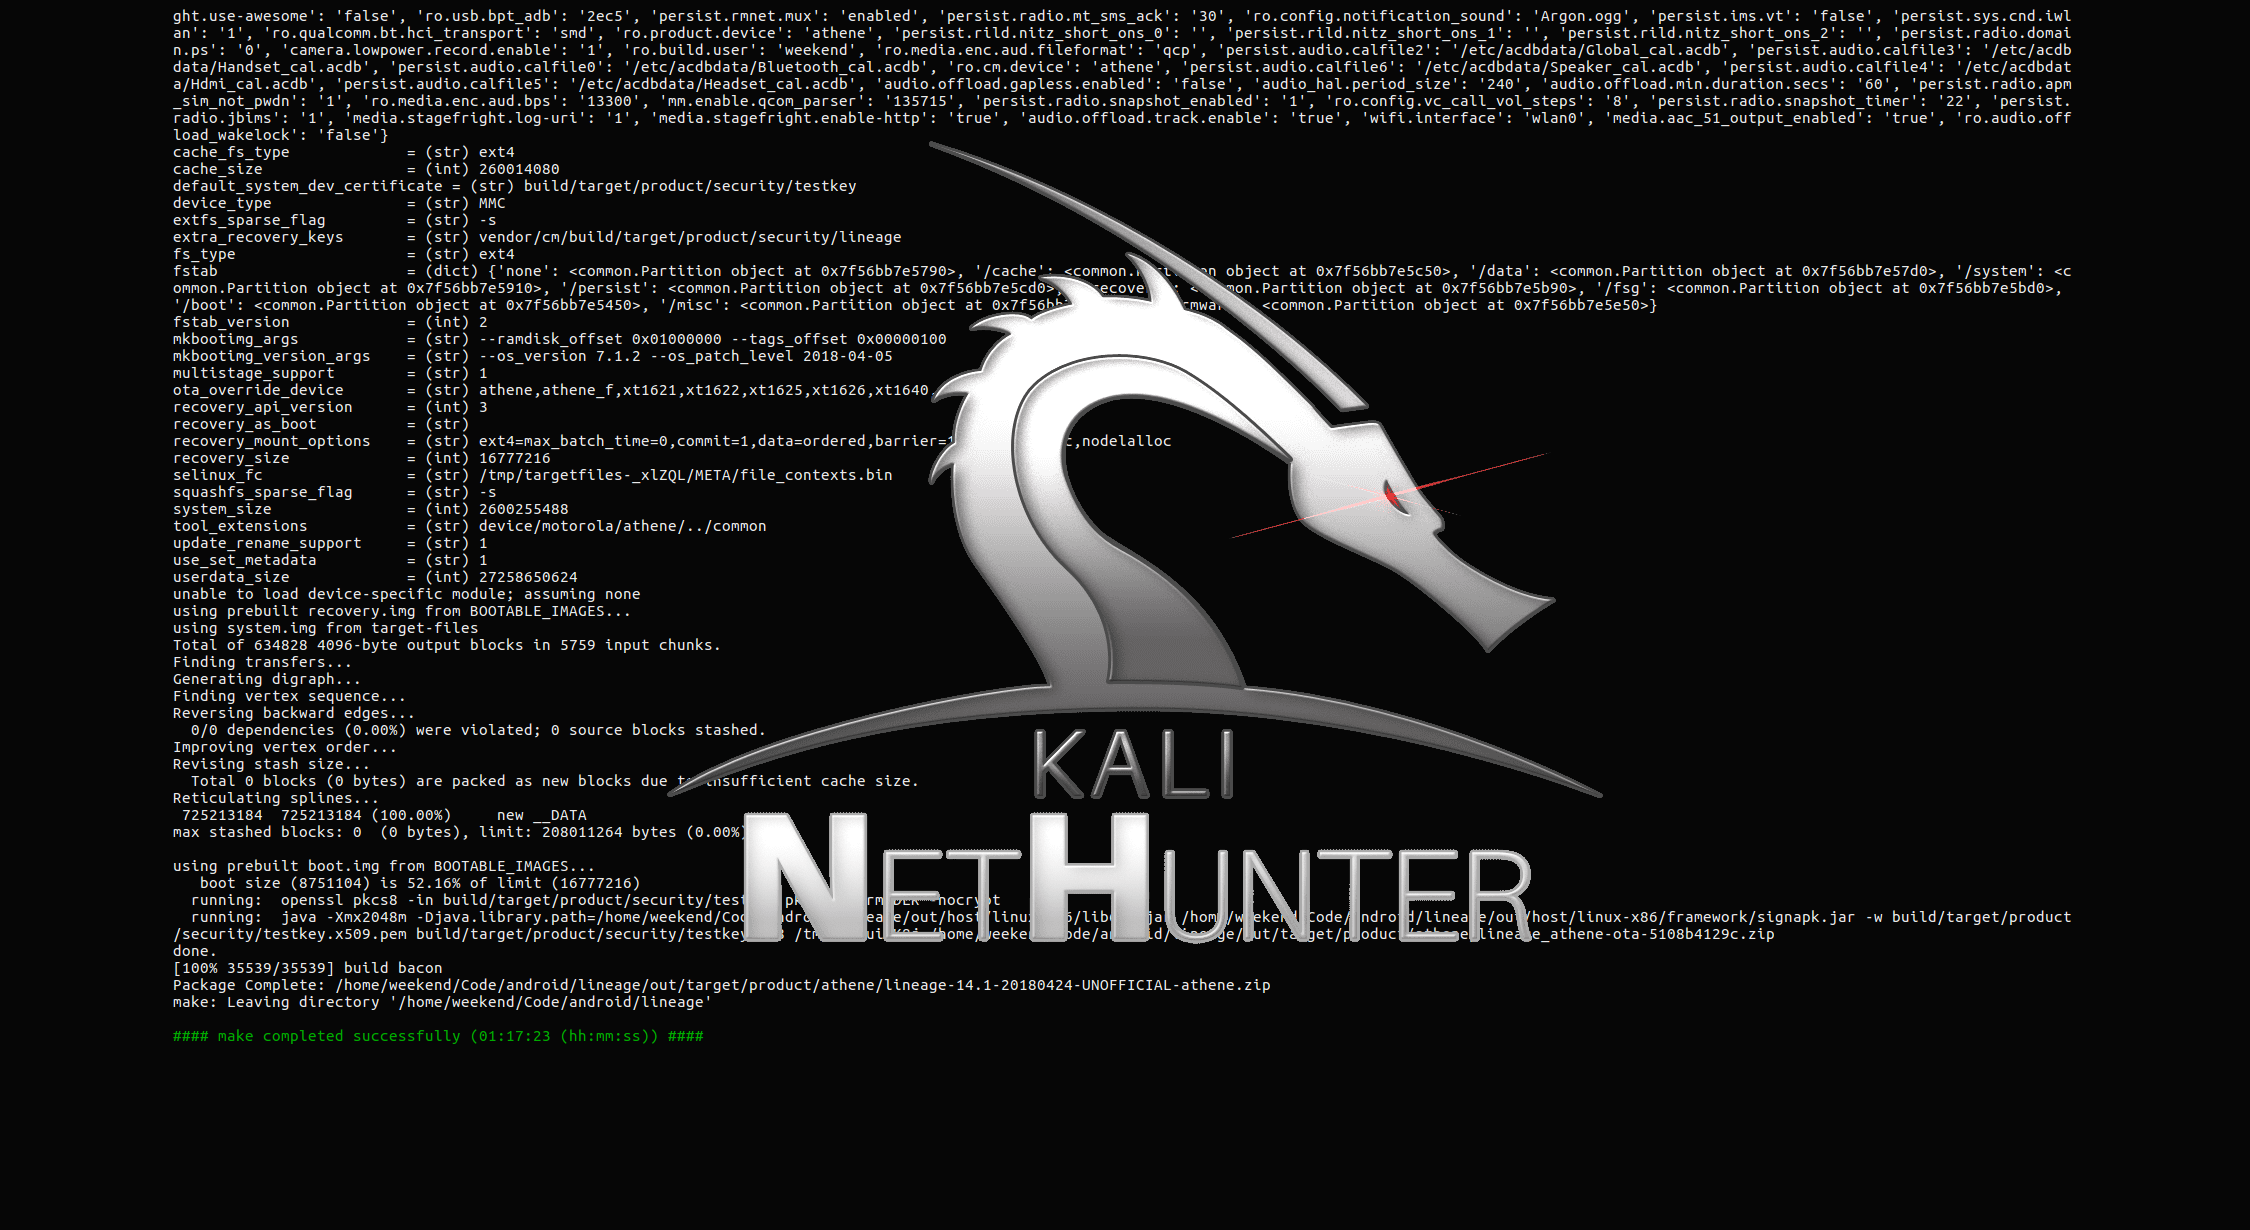 end of kernel build with kali nethunter logo